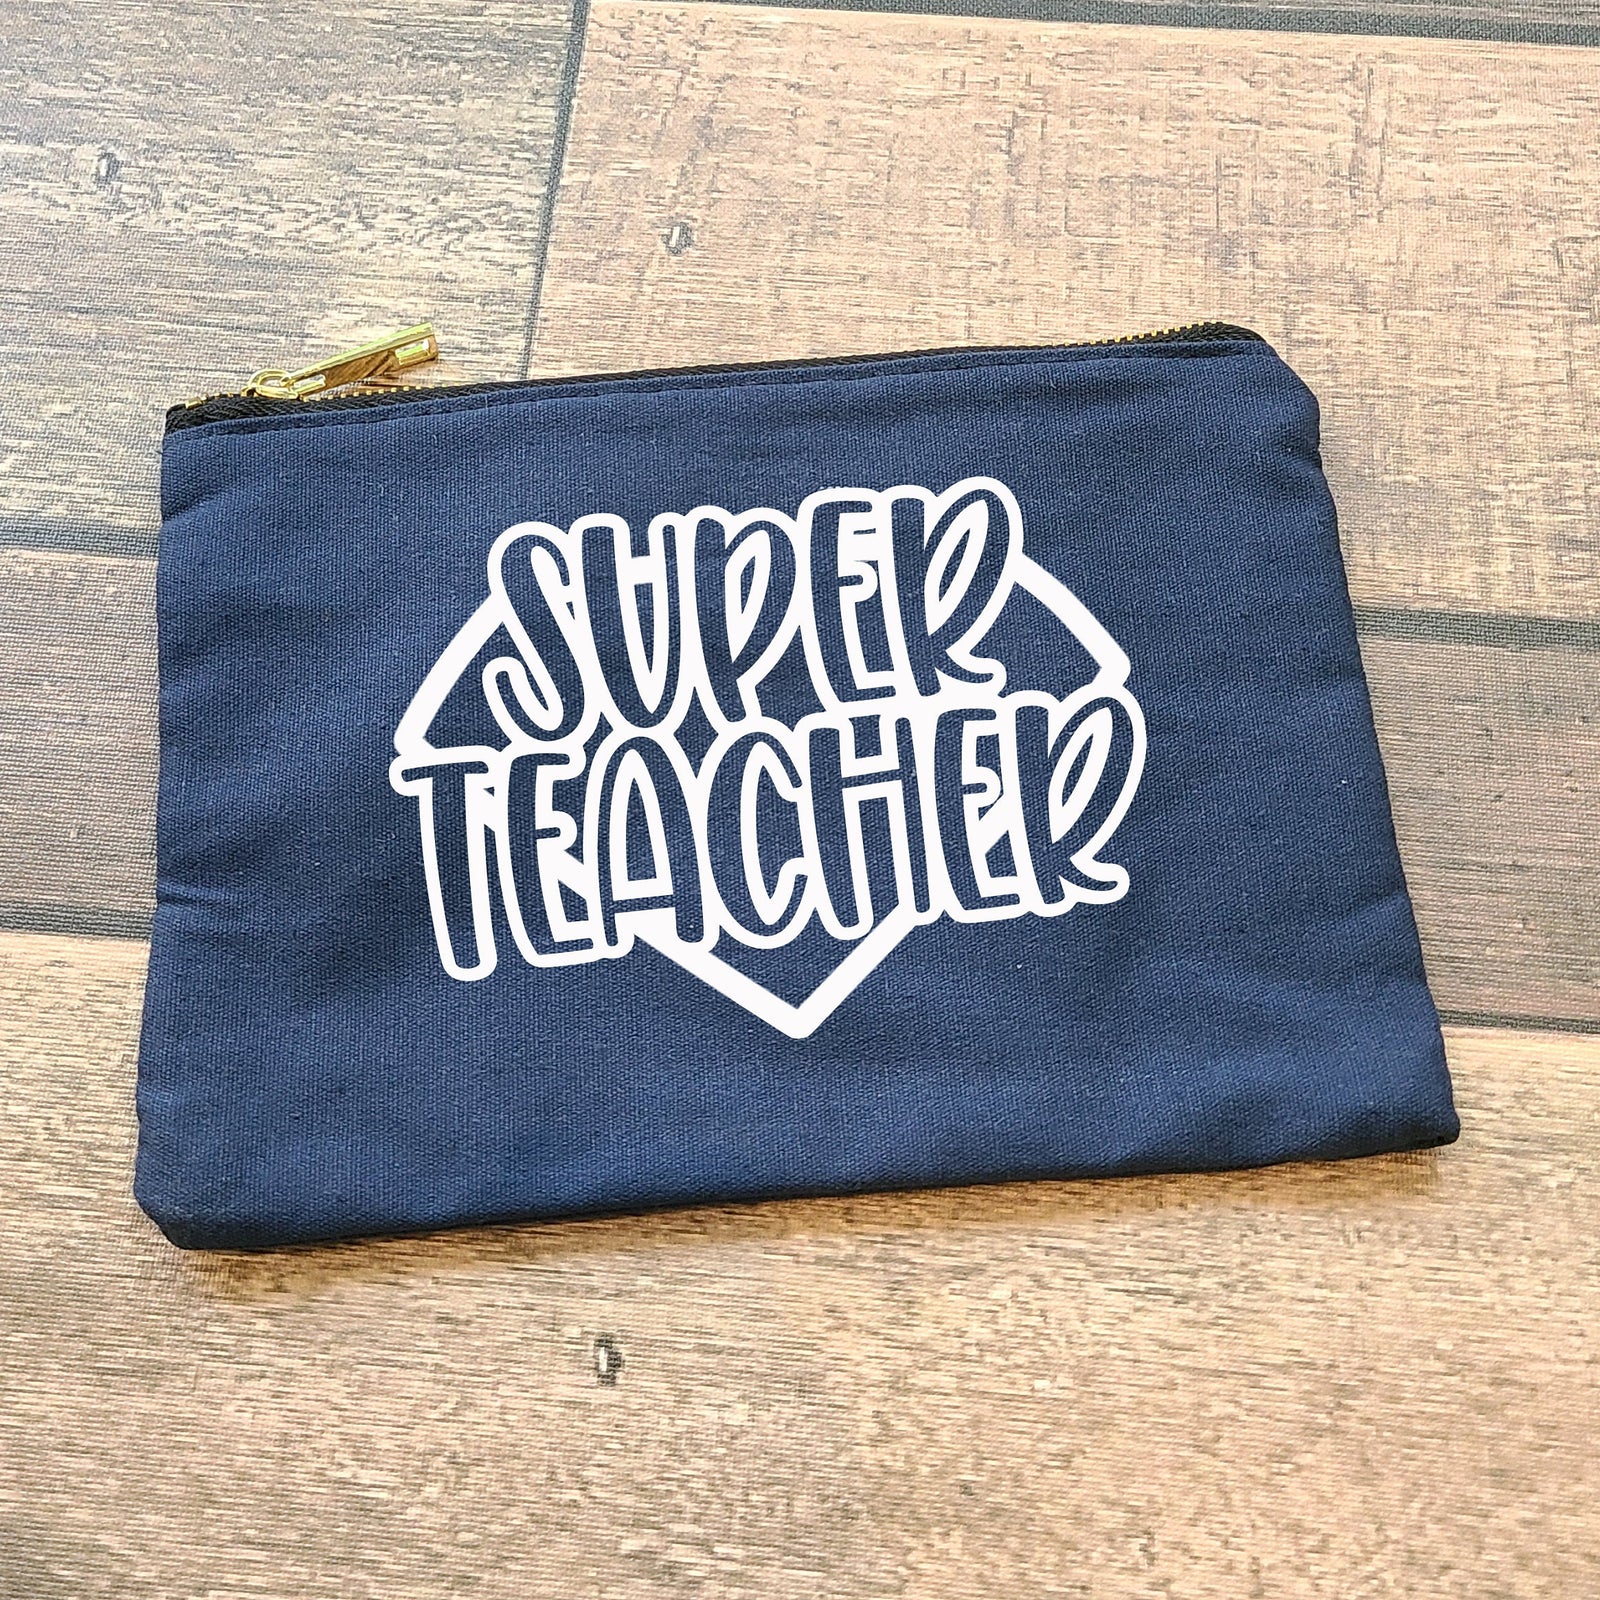 Super Teacher Canvas Cosmetic Bag - Christmas Stocking Stuffer - Small Zipper Pouch - Custom Teacher  Appreciation Gift